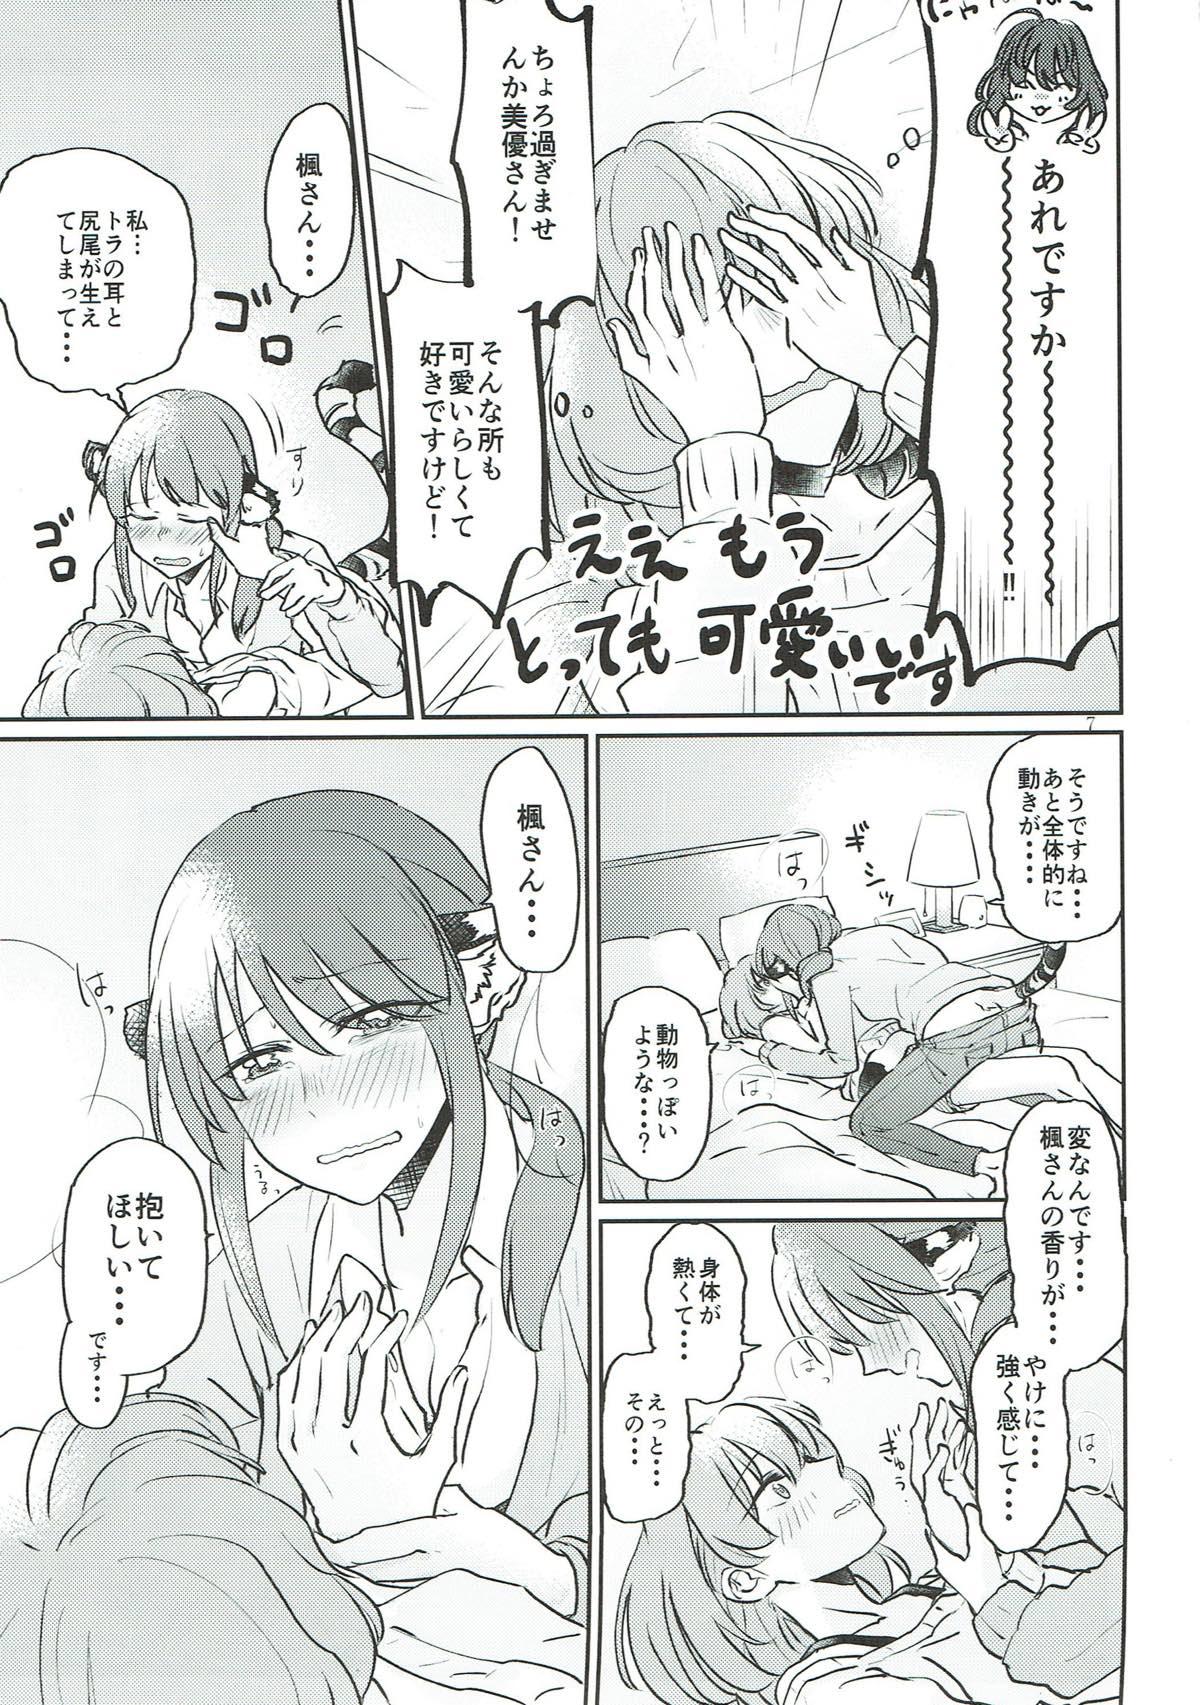 Gaygroupsex Tora no Kimochi ni Naru desu yo? - The idolmaster Fantasy - Page 6